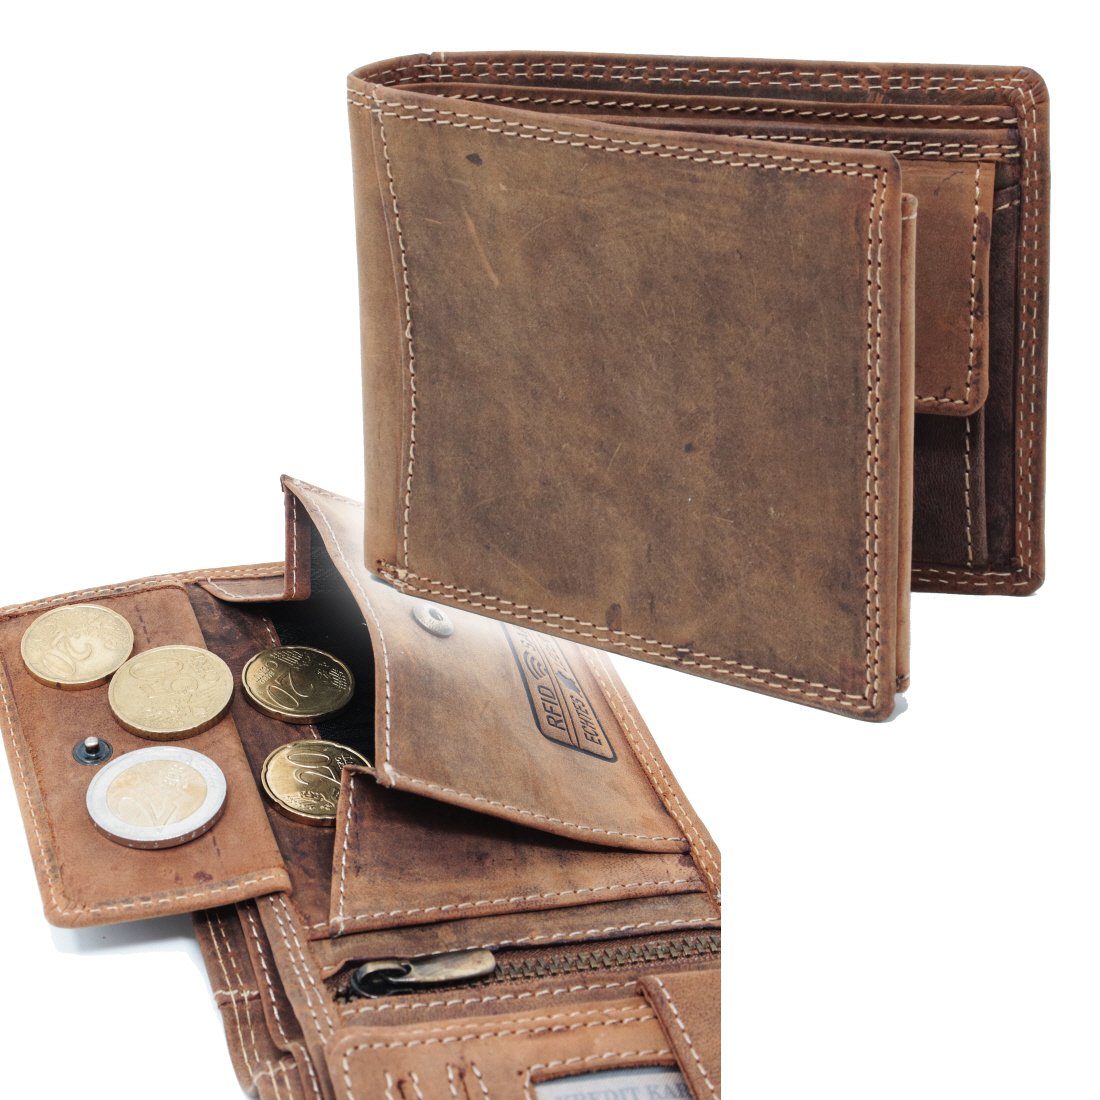 SHG Geldbörse ◊ Herren Börse Lederbörse mit Schutz RFID, Brieftasche Leder Münzfach Geldbeutel Portemonnaie RFID